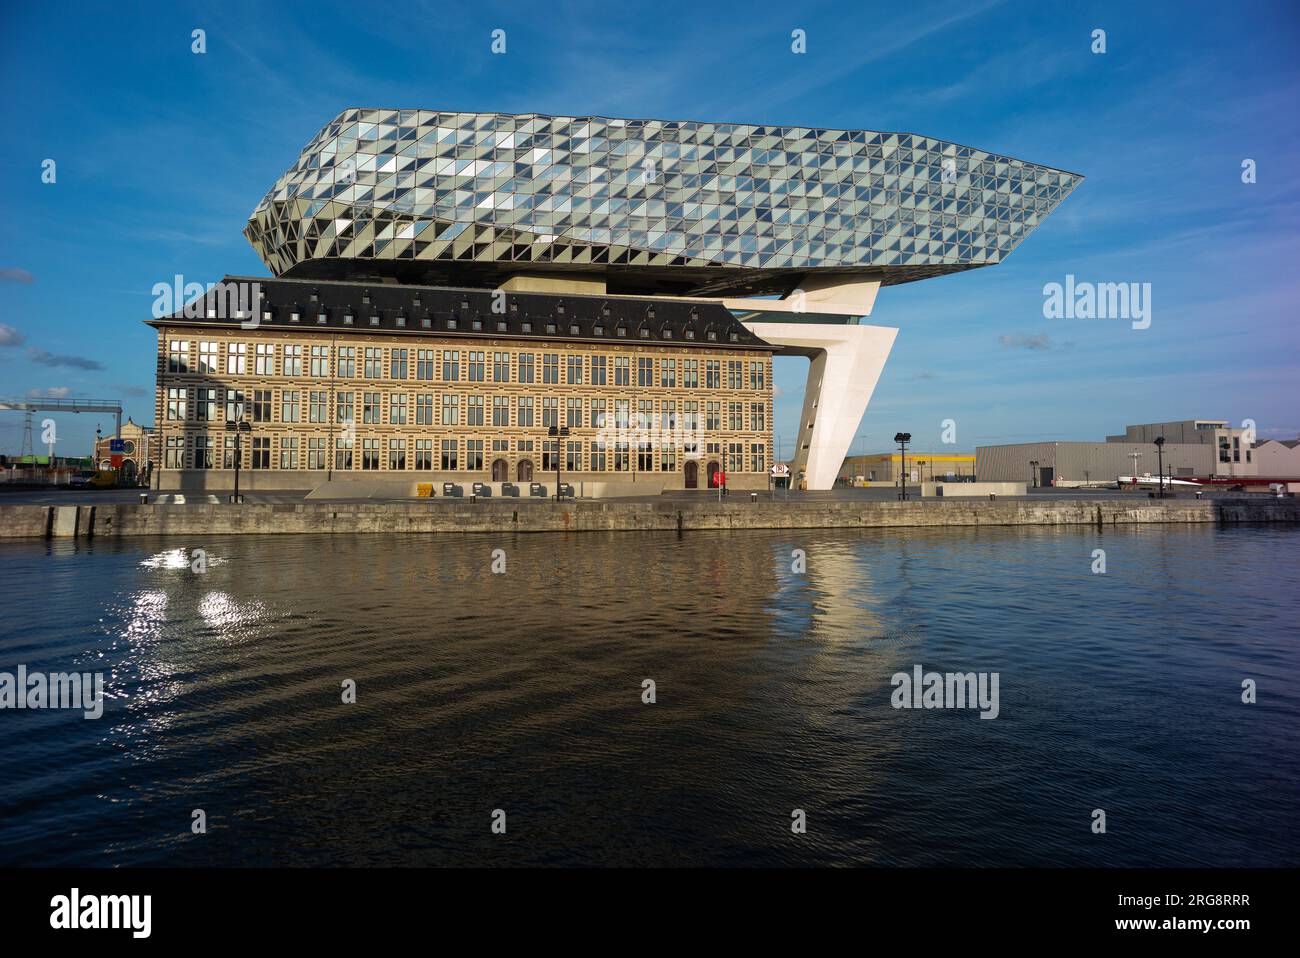 Veduta dell'edificio dell'autorità portuale di Anversa, opera dell'architetto Zaha Hadid situata sulla piazza Zaha Hadidplein nel porto di Anversa, Belgio, A Foto Stock